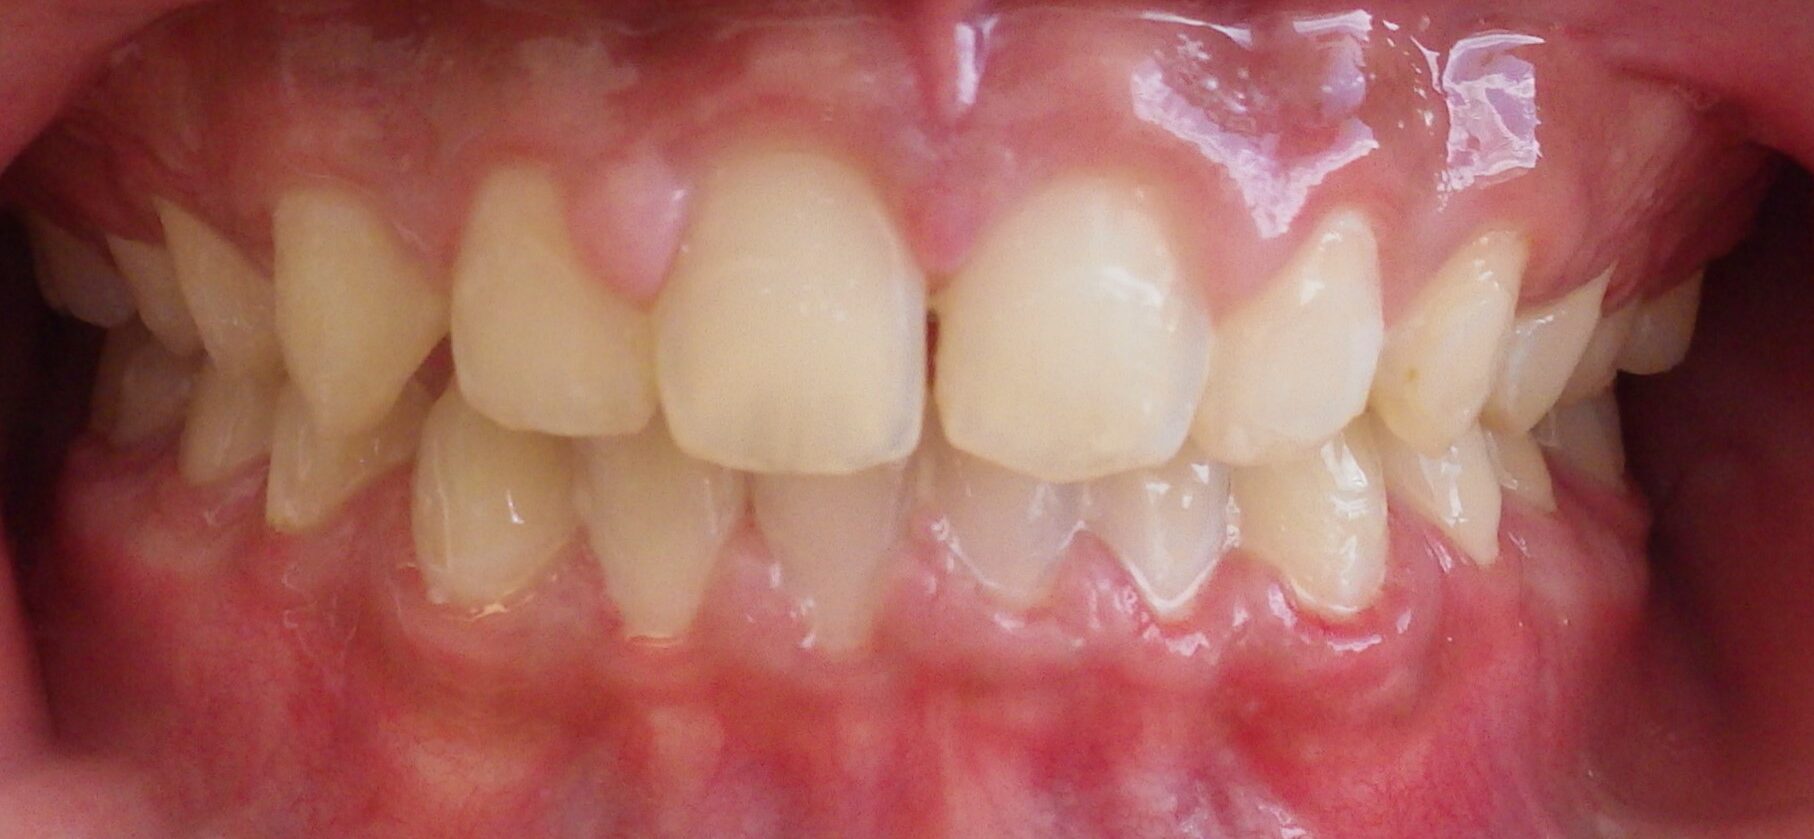 Unity Square Dental patient after braces